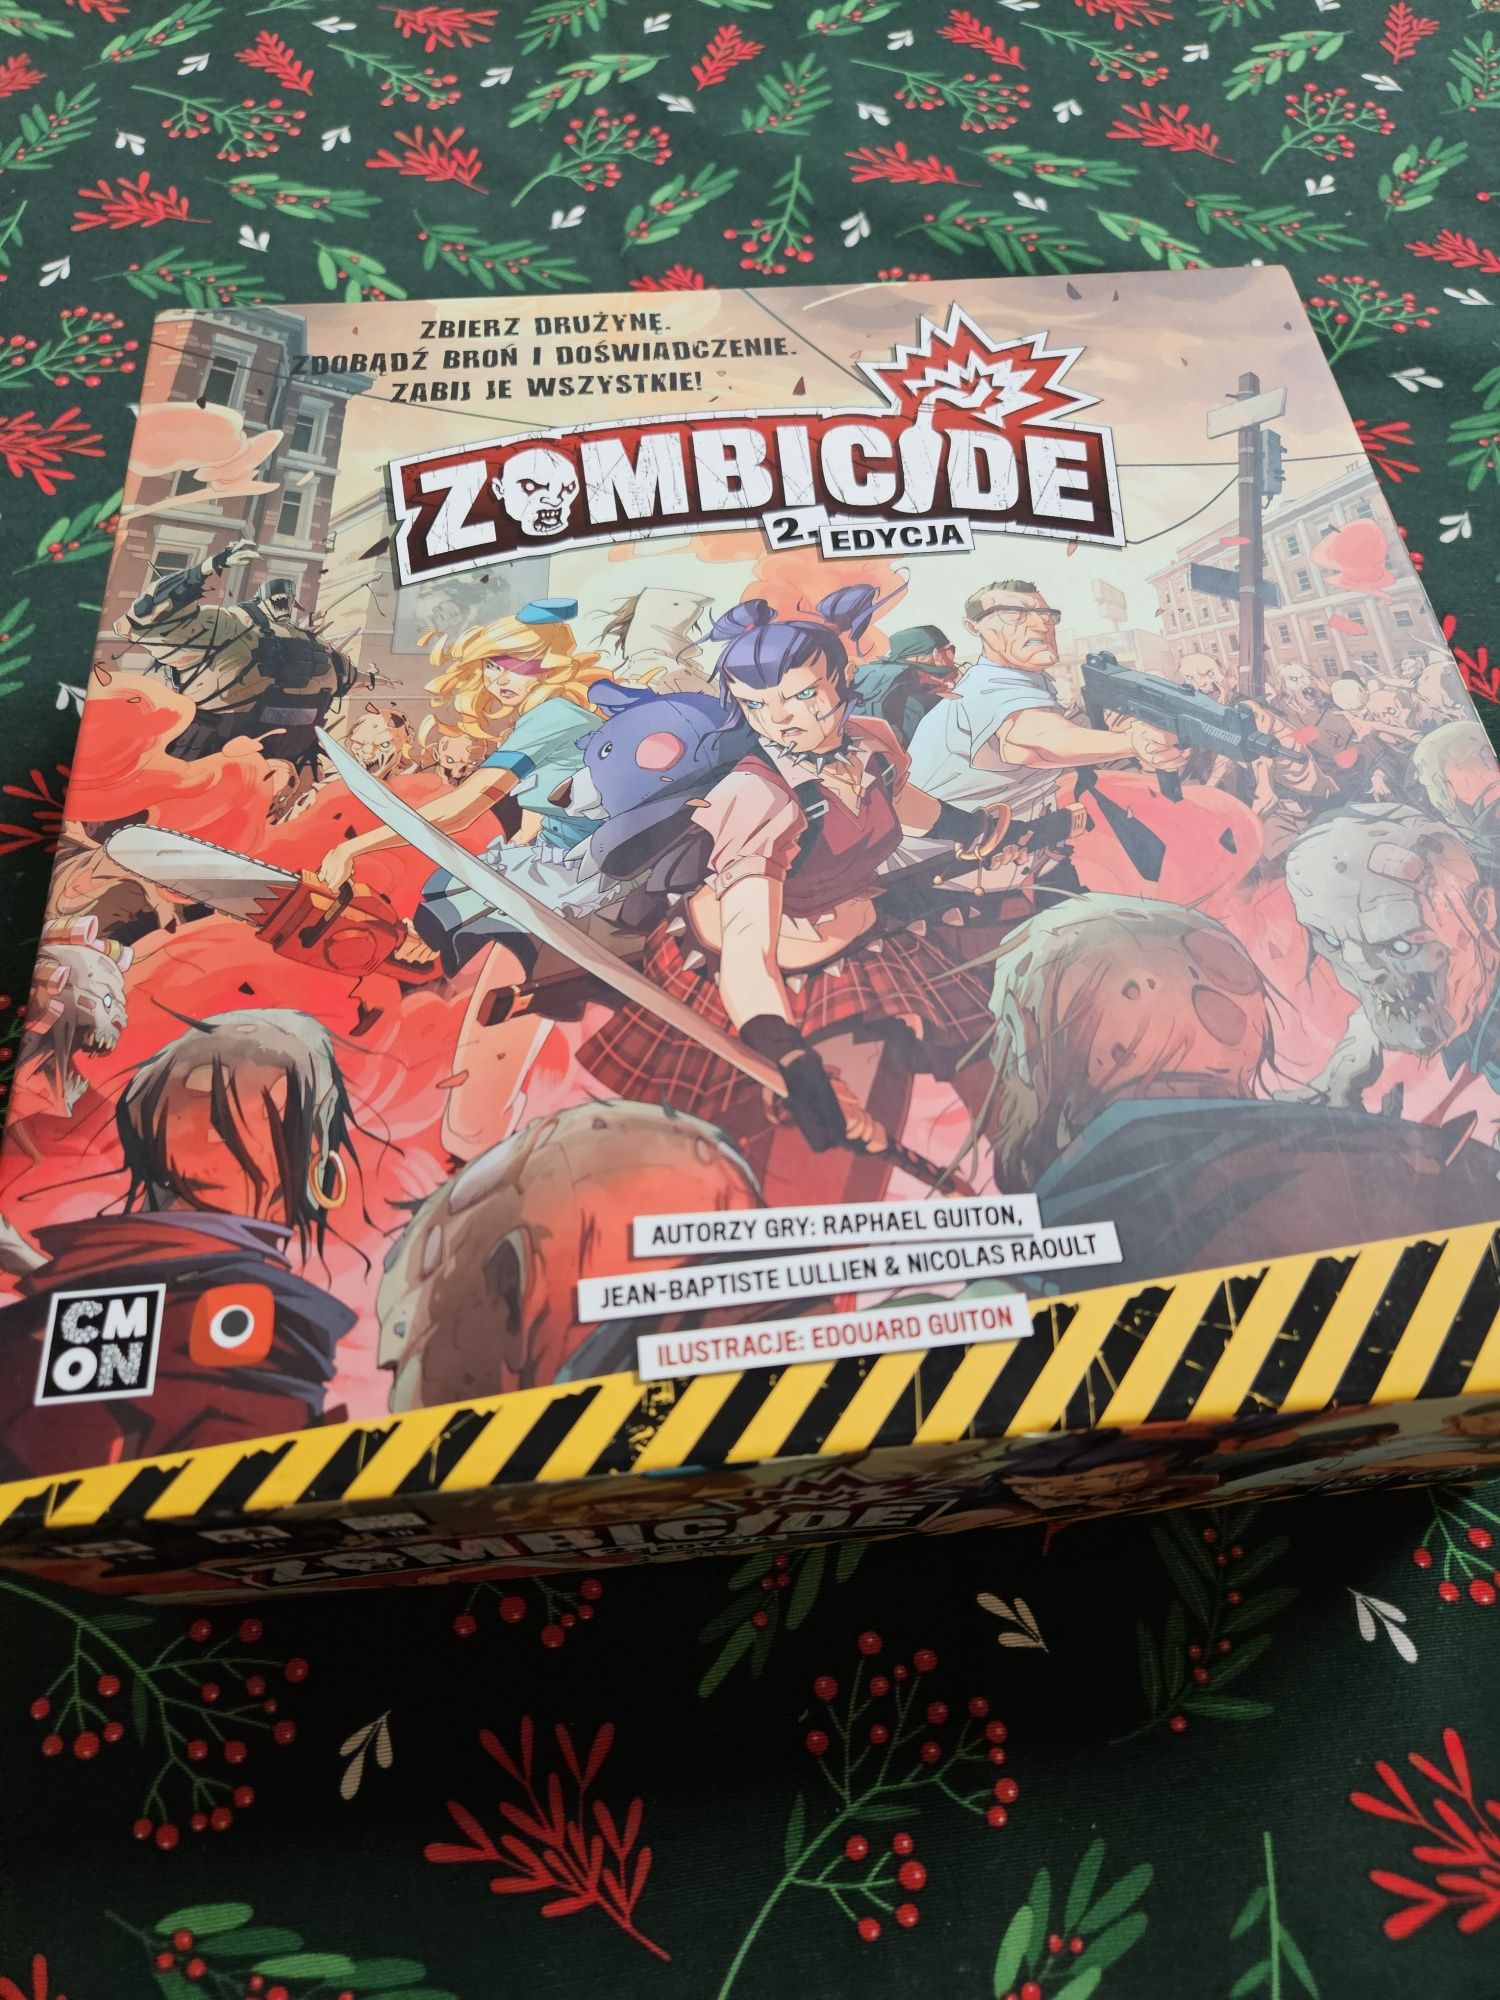 Zombicide 2 edition + insert + koszulki